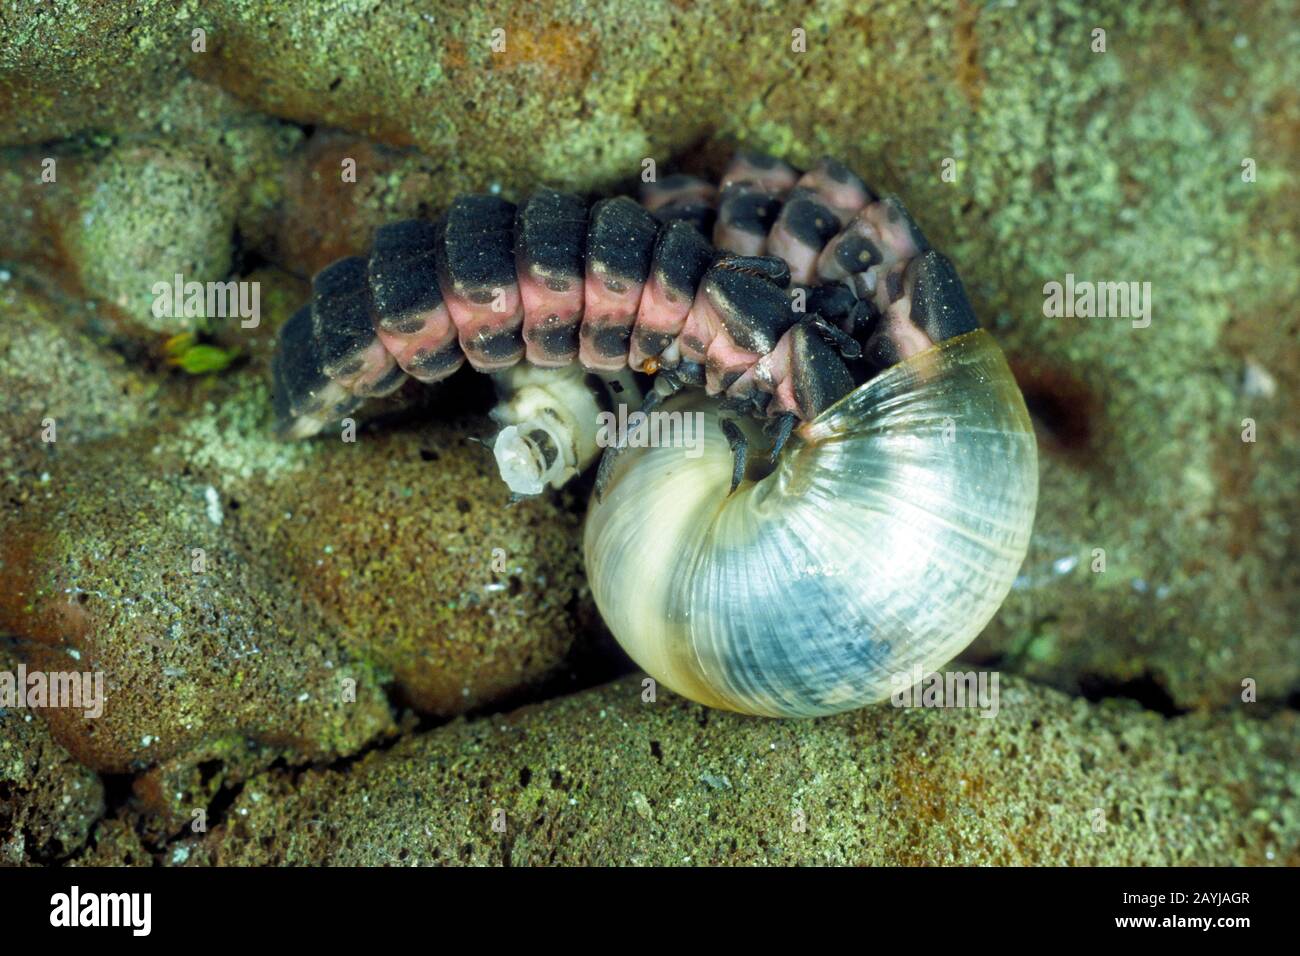 Petit léoptère (Lamprohiza slendidula, Phausis slendidula), larva capture des escargots, Allemagne Banque D'Images